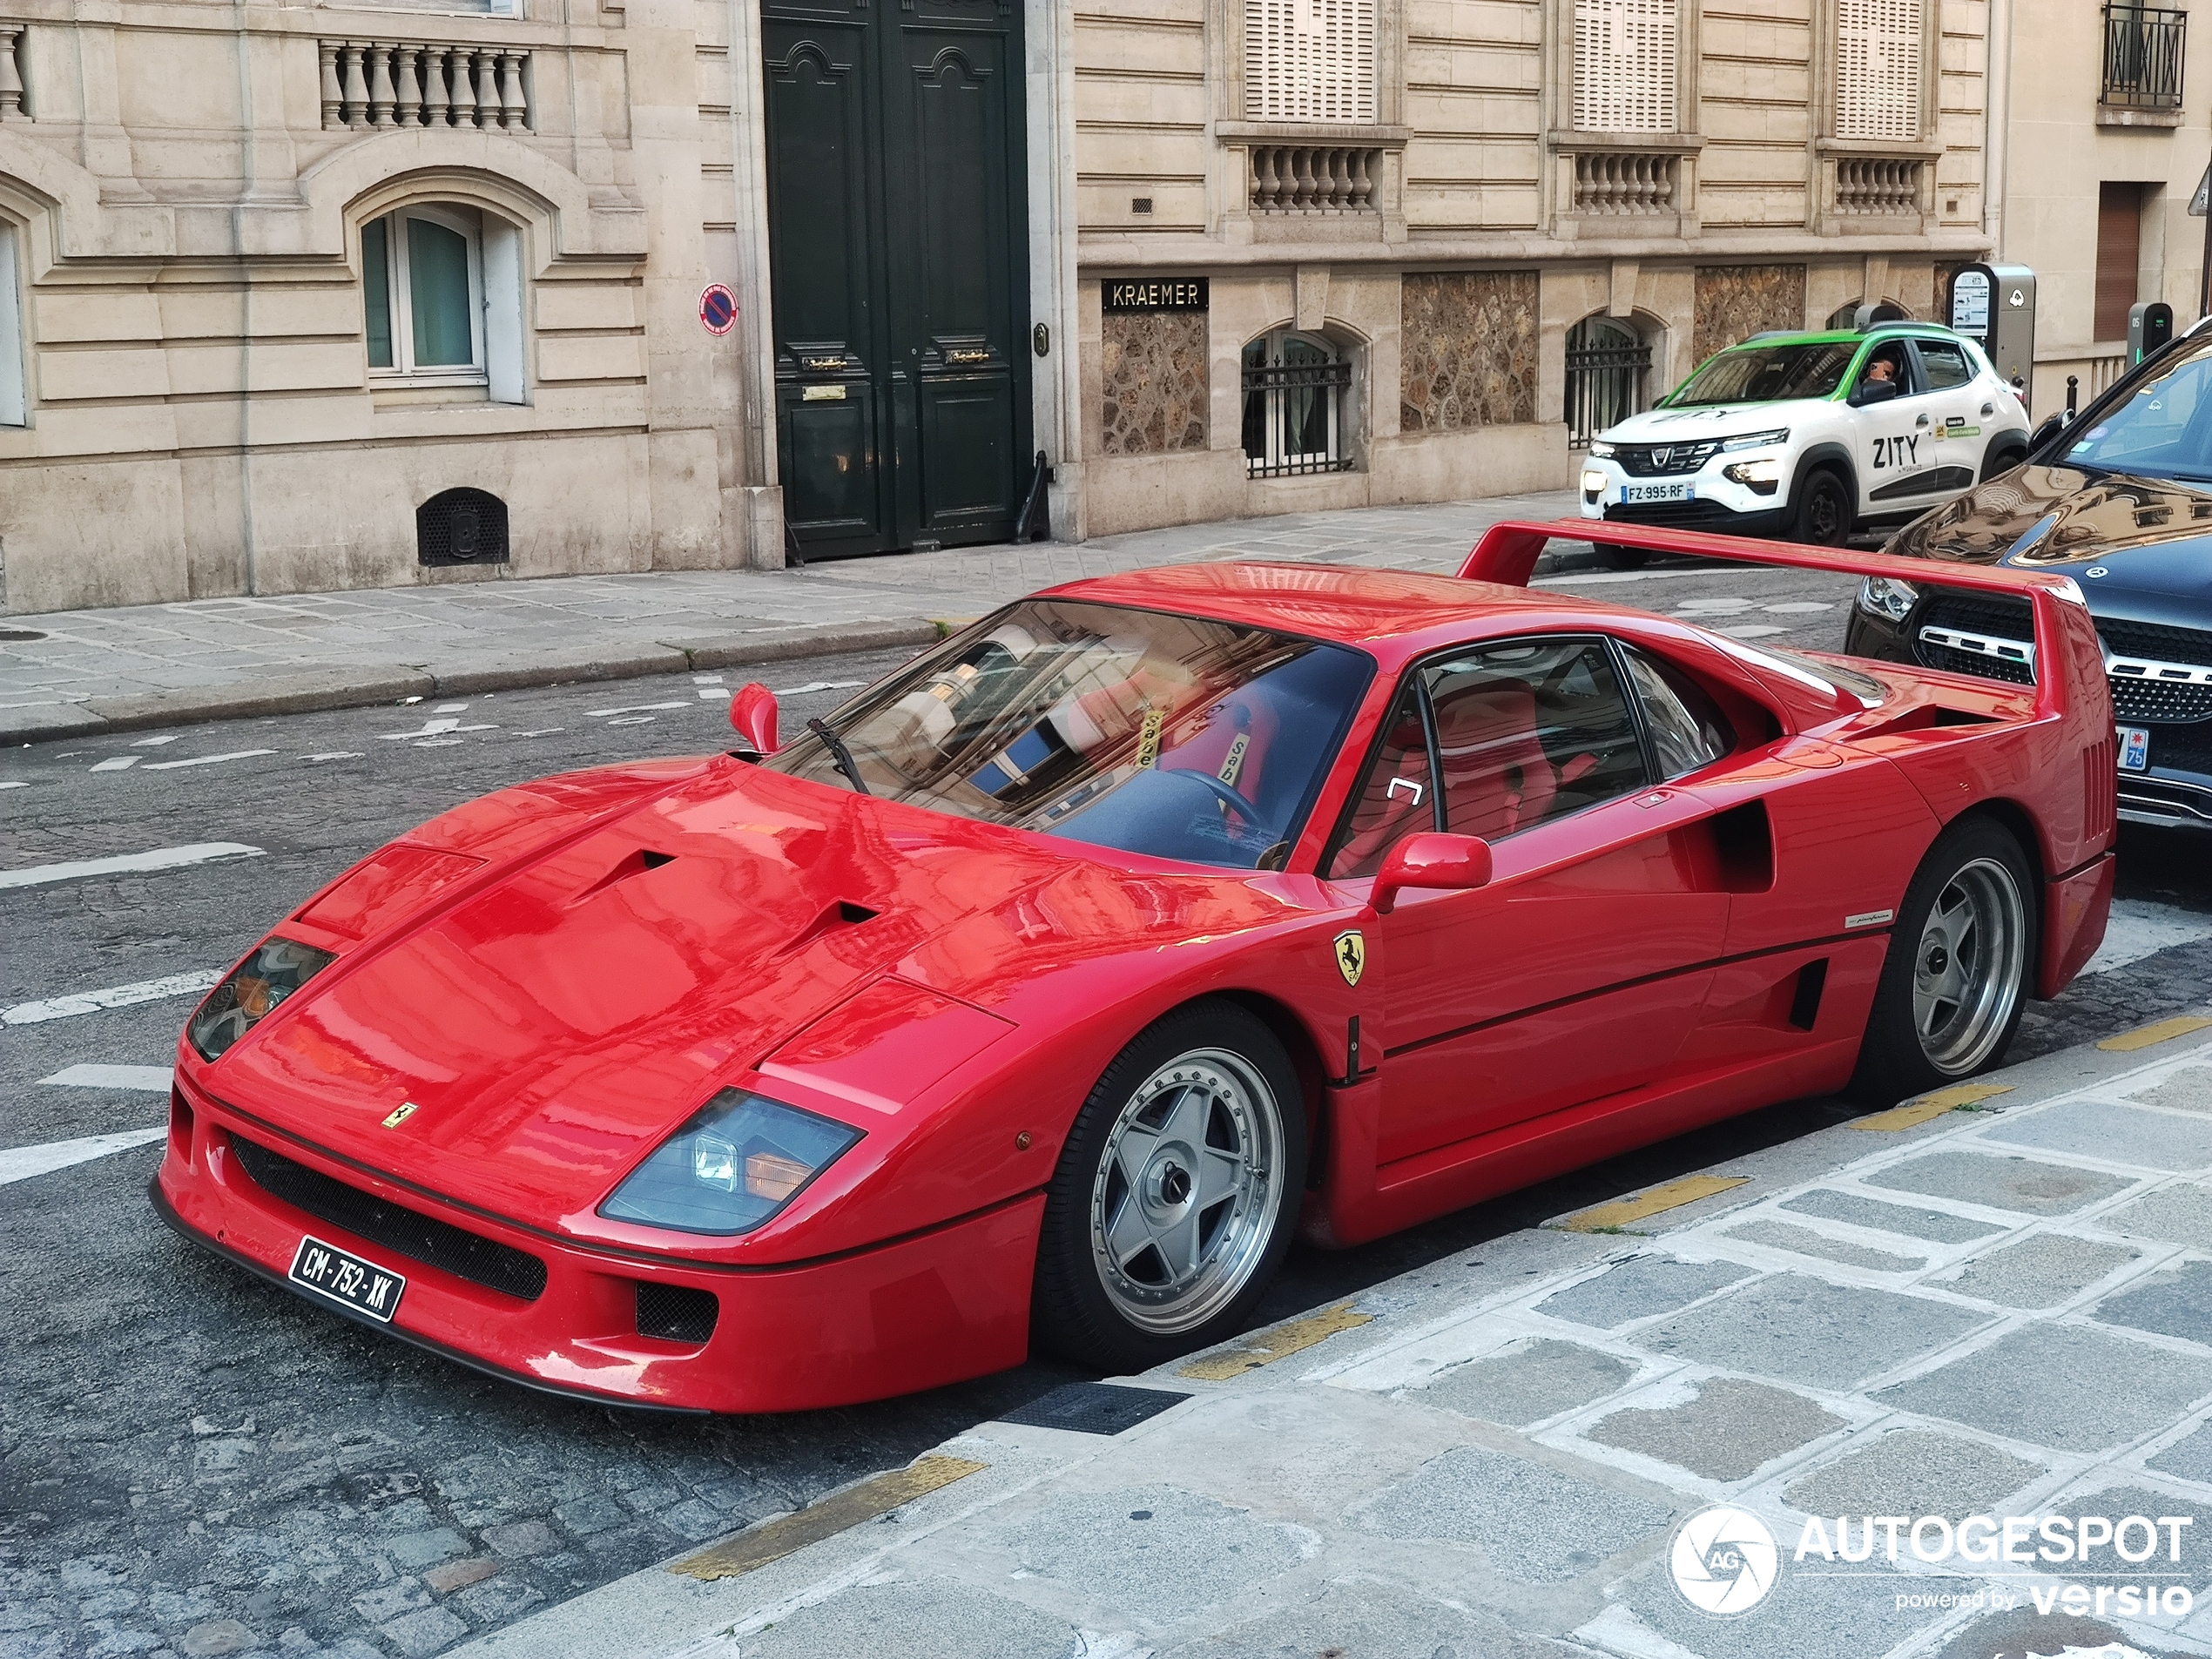 A Ferrari F40 shows up in Paris